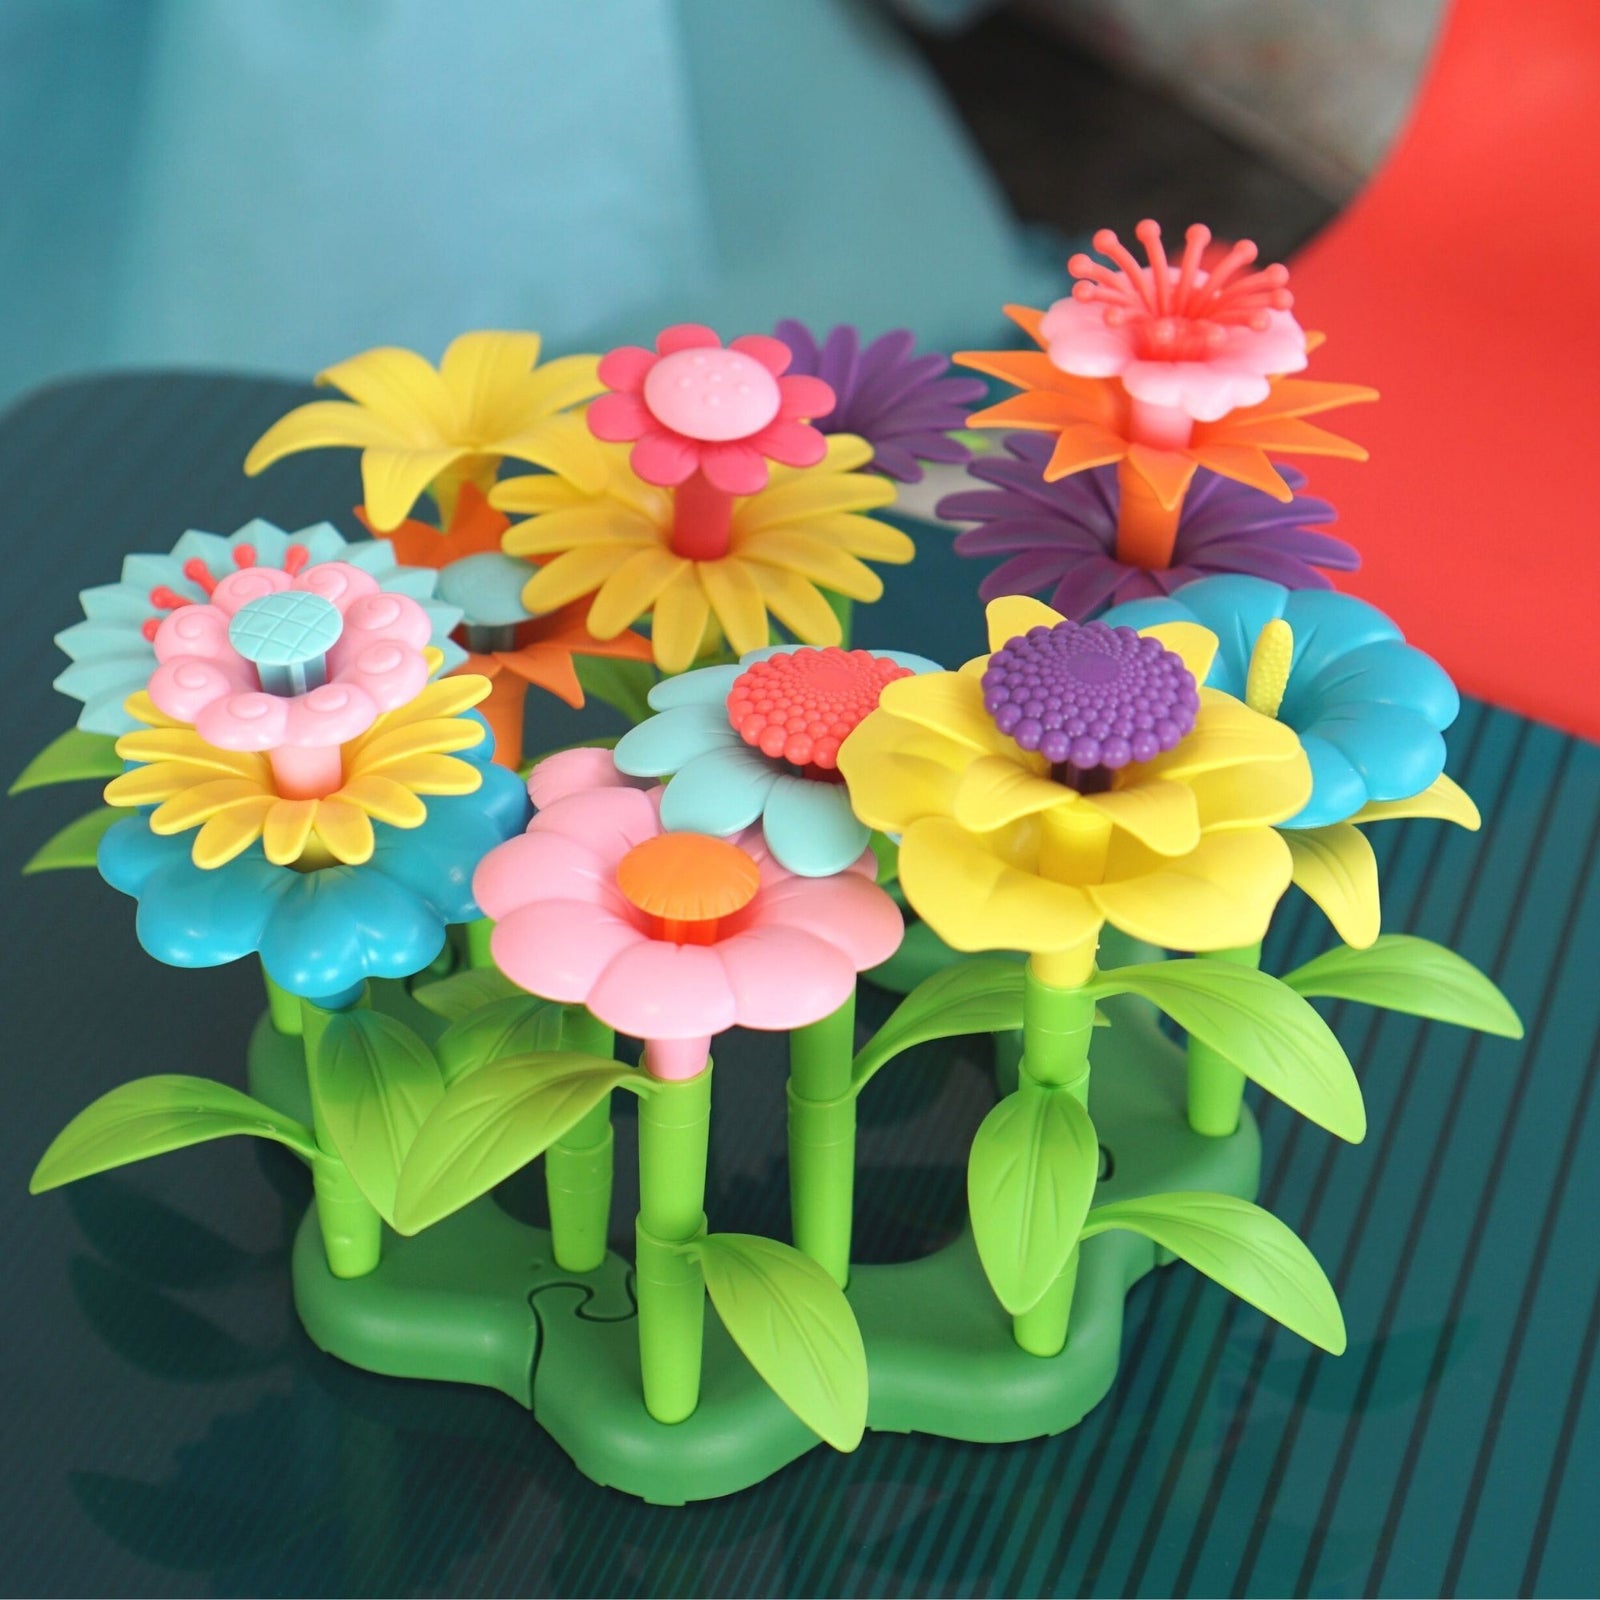 Flower Garden Building Toy, Build A Flower Garden Toddler Toy 110Pc